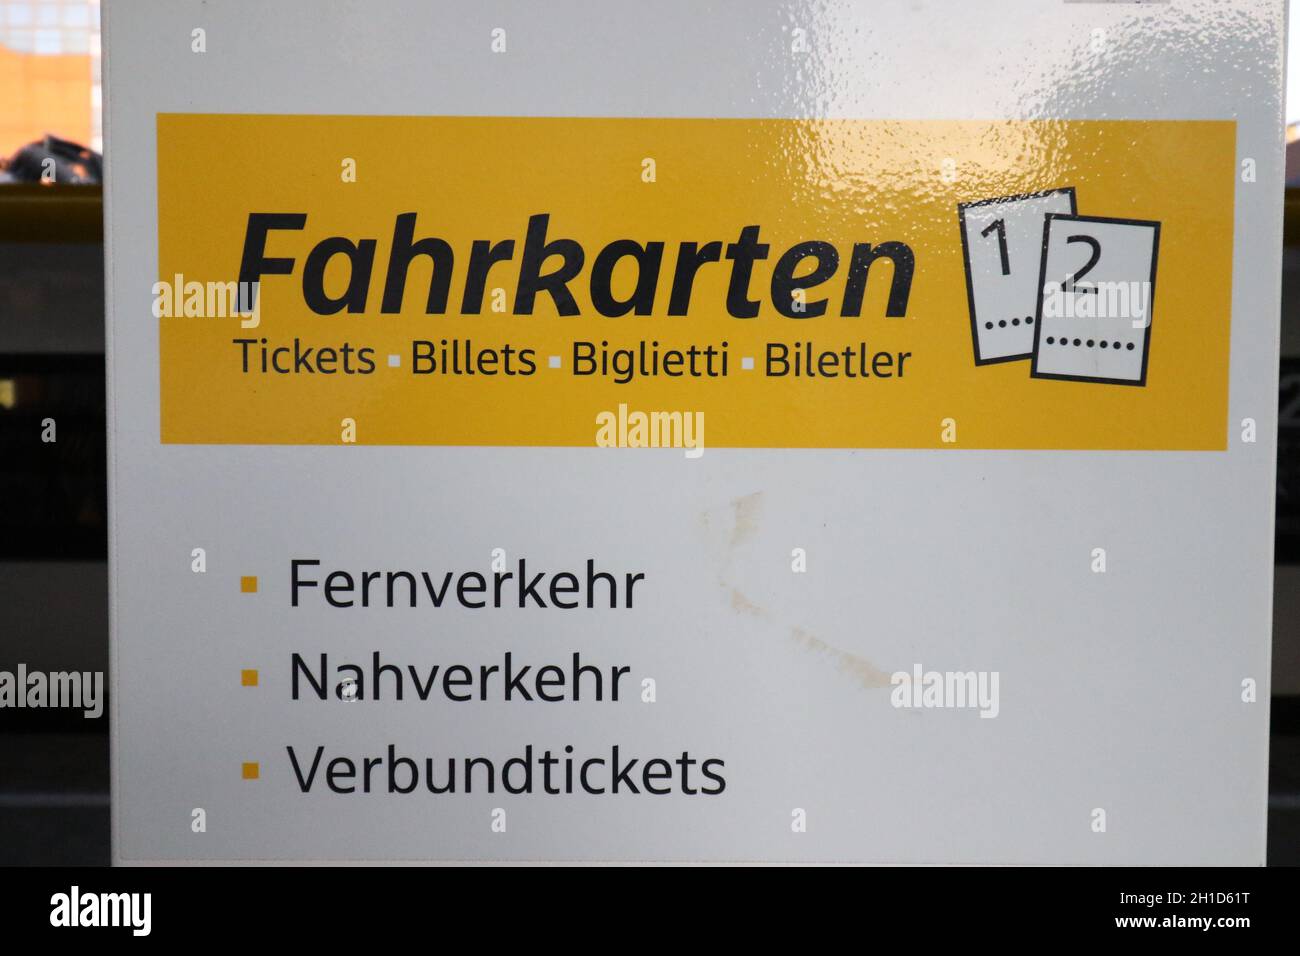 Hinweisschild auf Fahrkarten am Gleis im Hauptbahnhof von Freiburg - Freiburg im Breisgau und das Leben in Zeiten des Corona Virus - Themenbild Medizi Stock Photo